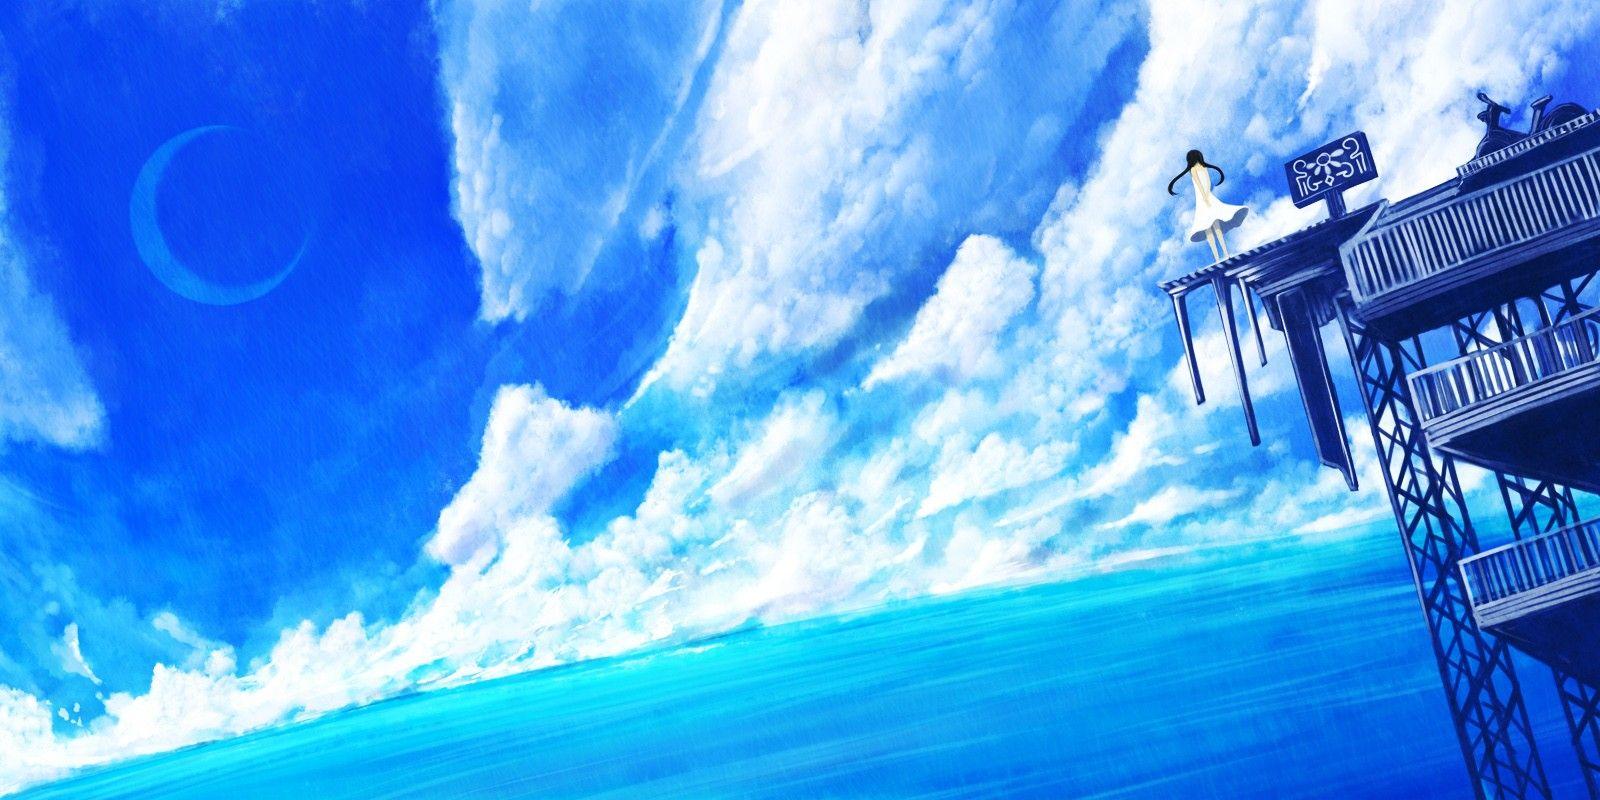 Anime Landscape: Anime Blue Sky Background